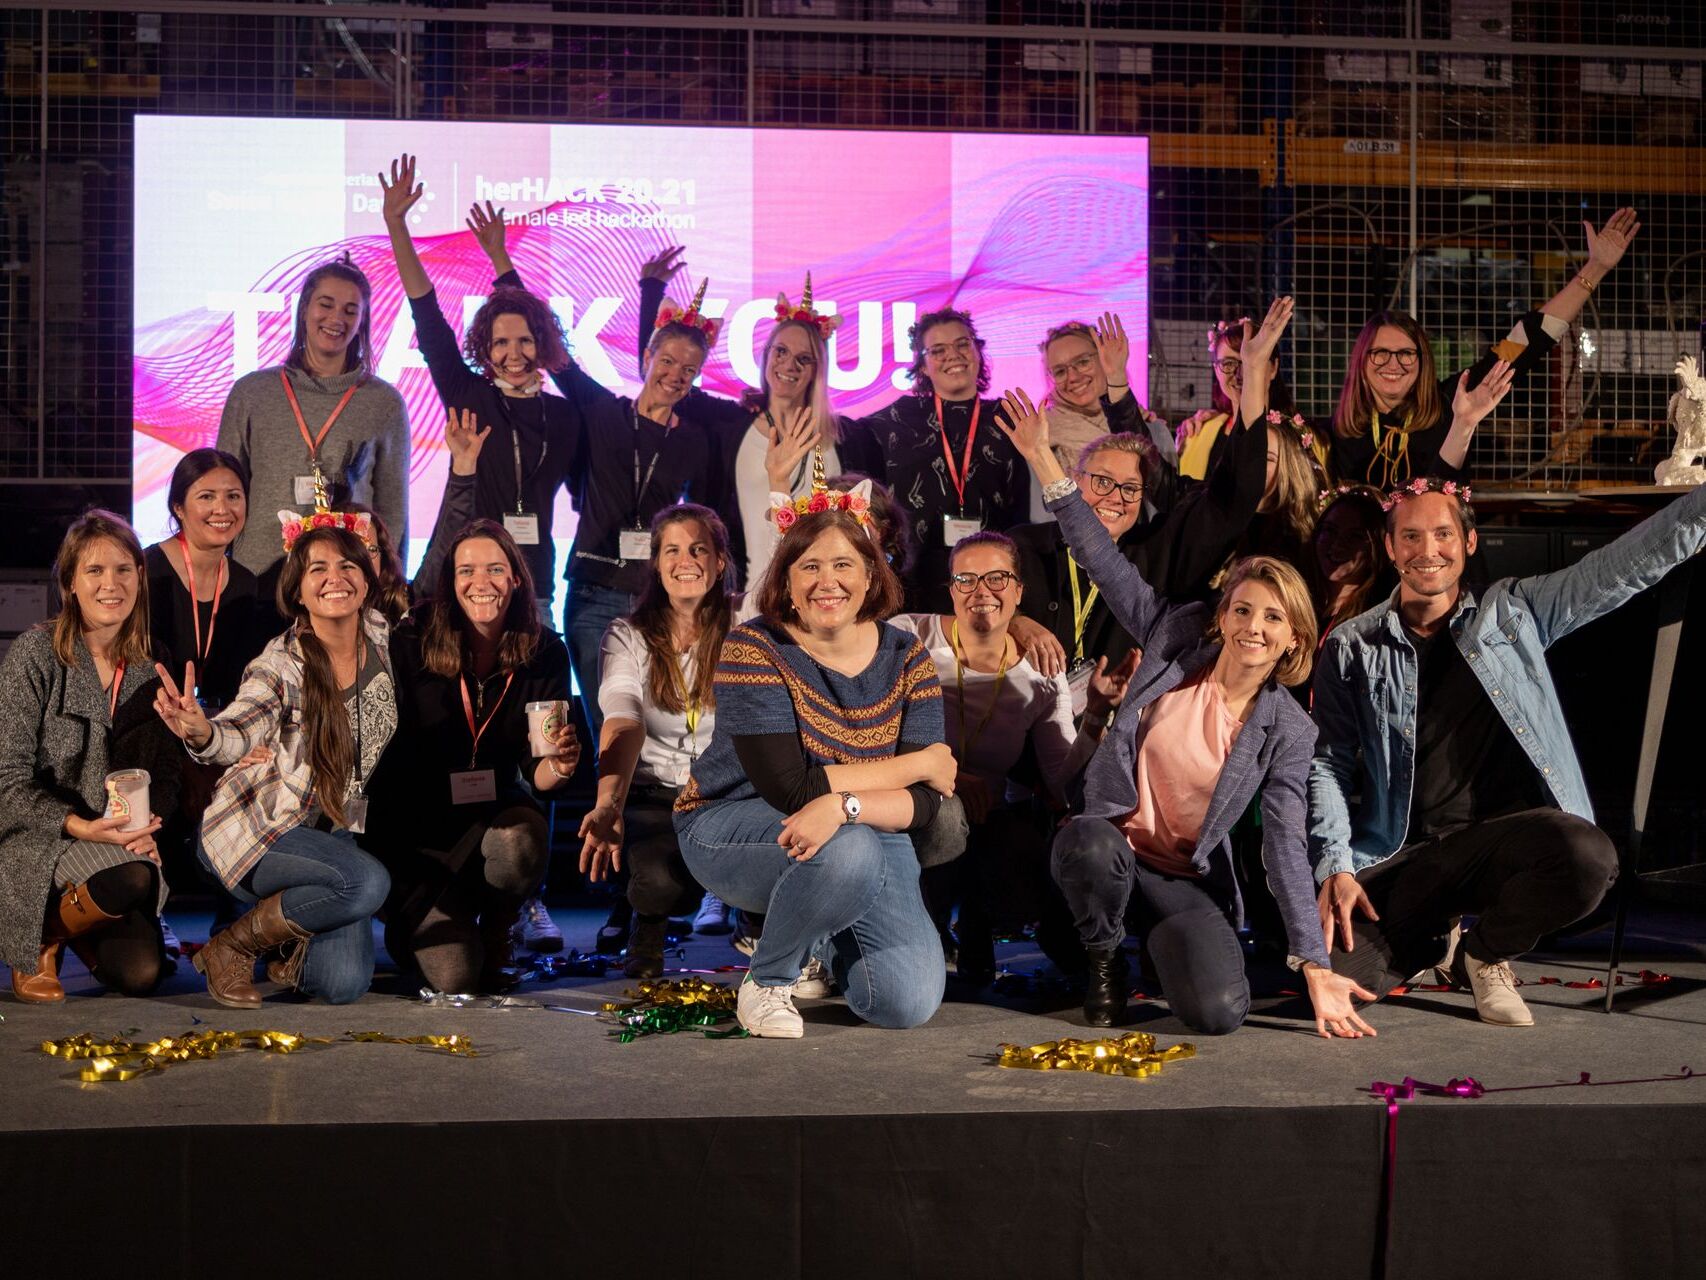 Hackatonul feminin „HerHack”, organizat pe 6 și 7 noiembrie în cadrul „Swiss Digital Day”, a fost câștigat de Team Iconics, formată din Melanie Menge, Fiona Hediger, Yamina Siegrist, Maria Kliesch și Elisabeth MacKenzie (Foto: Moritz Schmid)